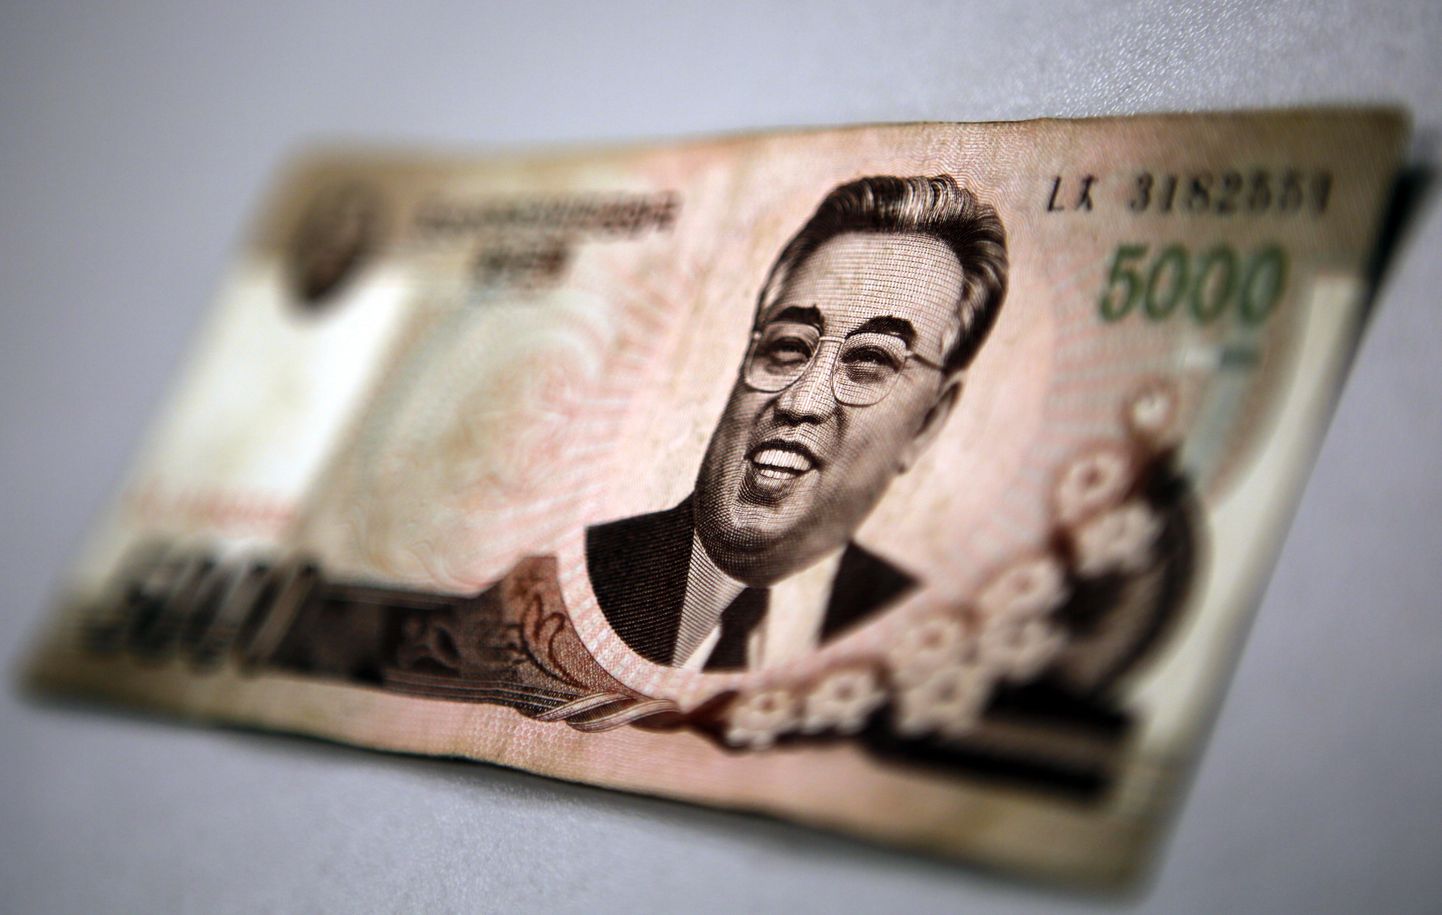 Põhja-Korea rahatäht. Foto on illustratiivne.